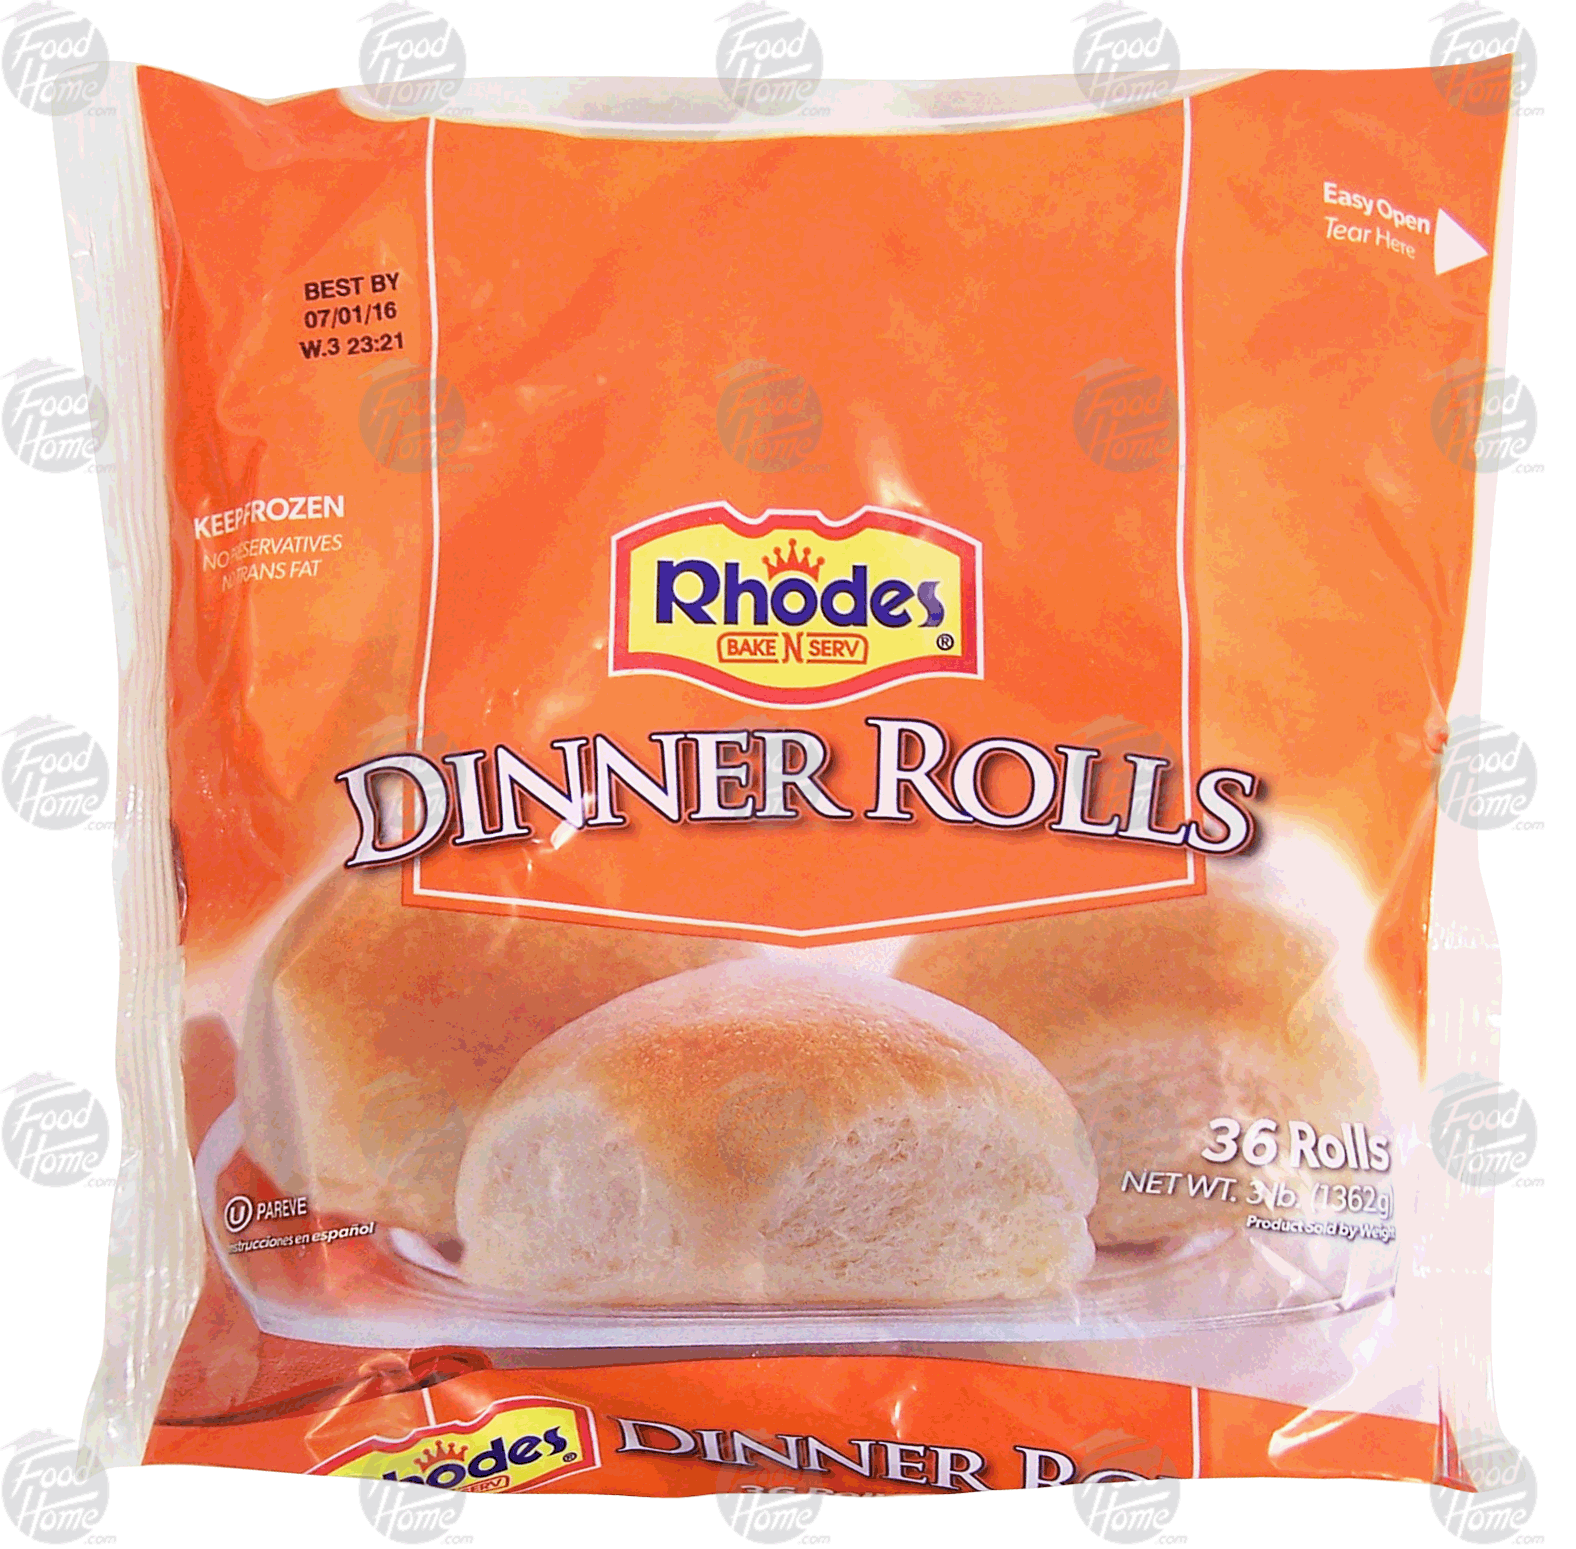 Rhodes Bake N Serv dinner rolls, 36 rolls Full-Size Picture